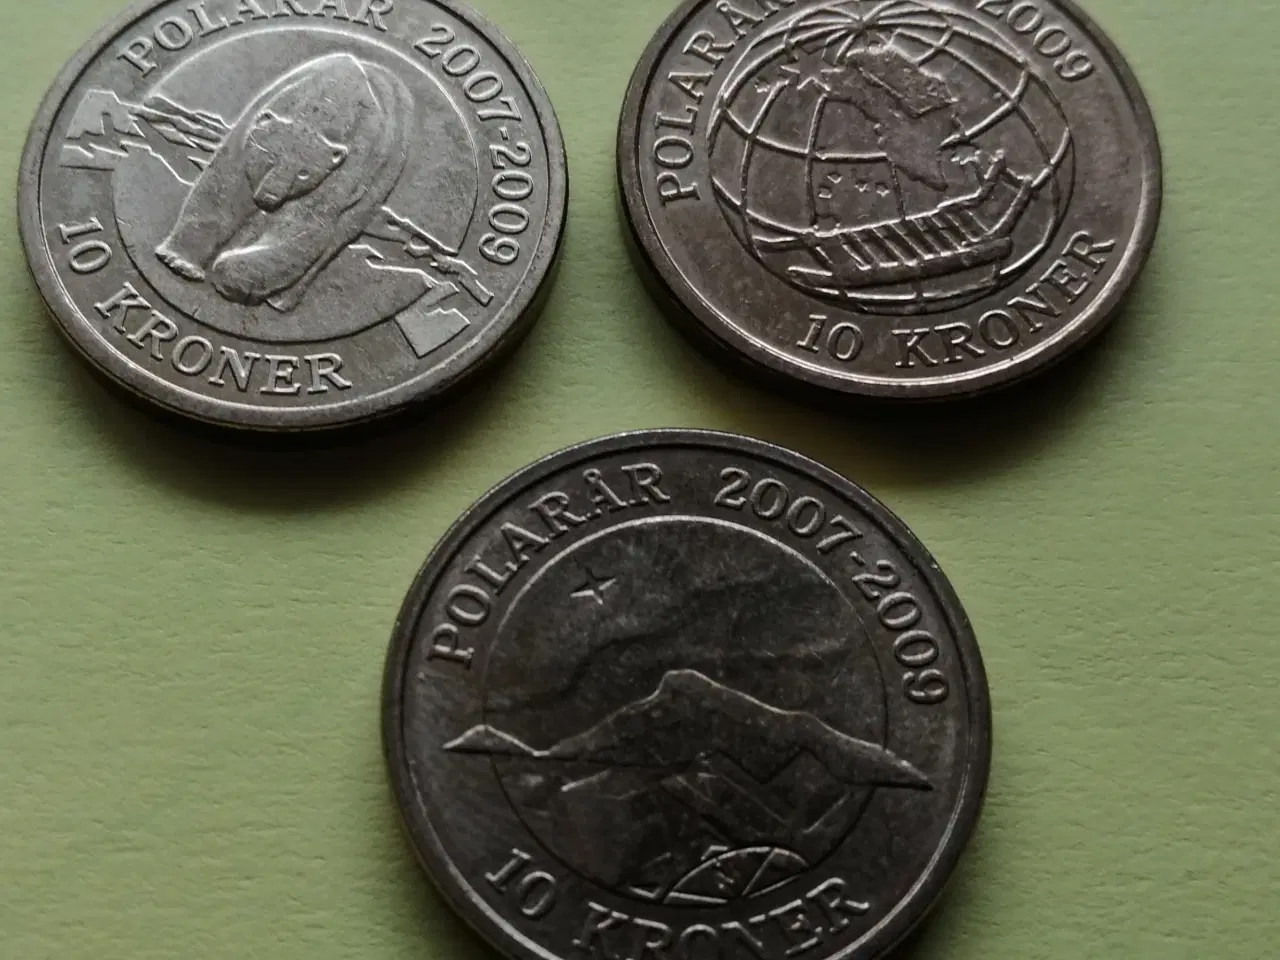 Billede 5 - Danske mønter og 10 kr. seddel